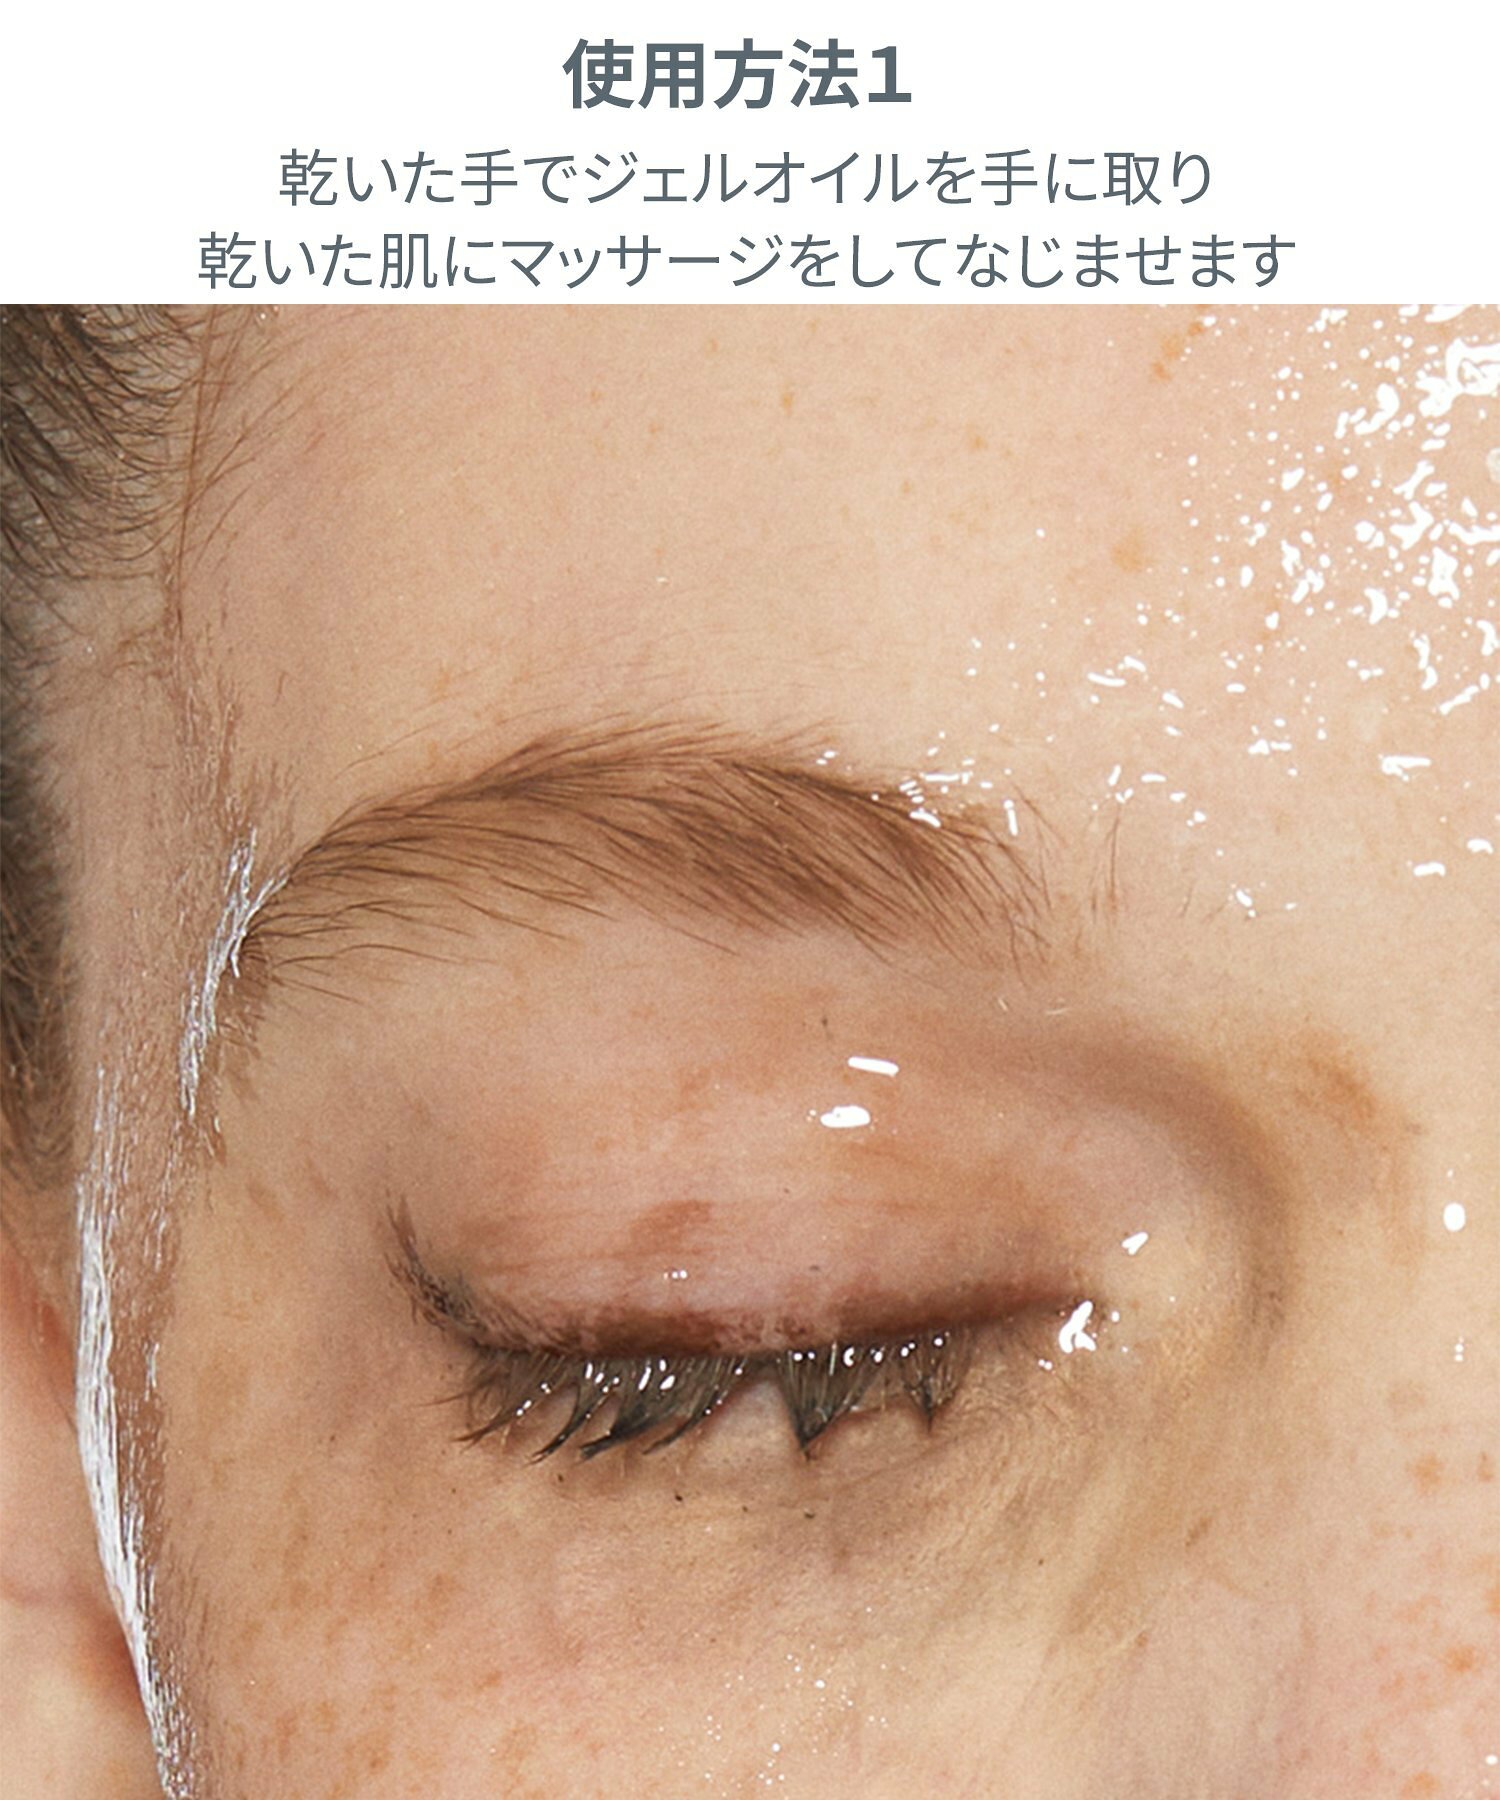 (U)オイル トゥ フォーム トータルクレンザー/オールインワン クレンジング ジェルオイル 洗顔フォーム 泡立つ 基礎化粧品 スキンケア 化粧品